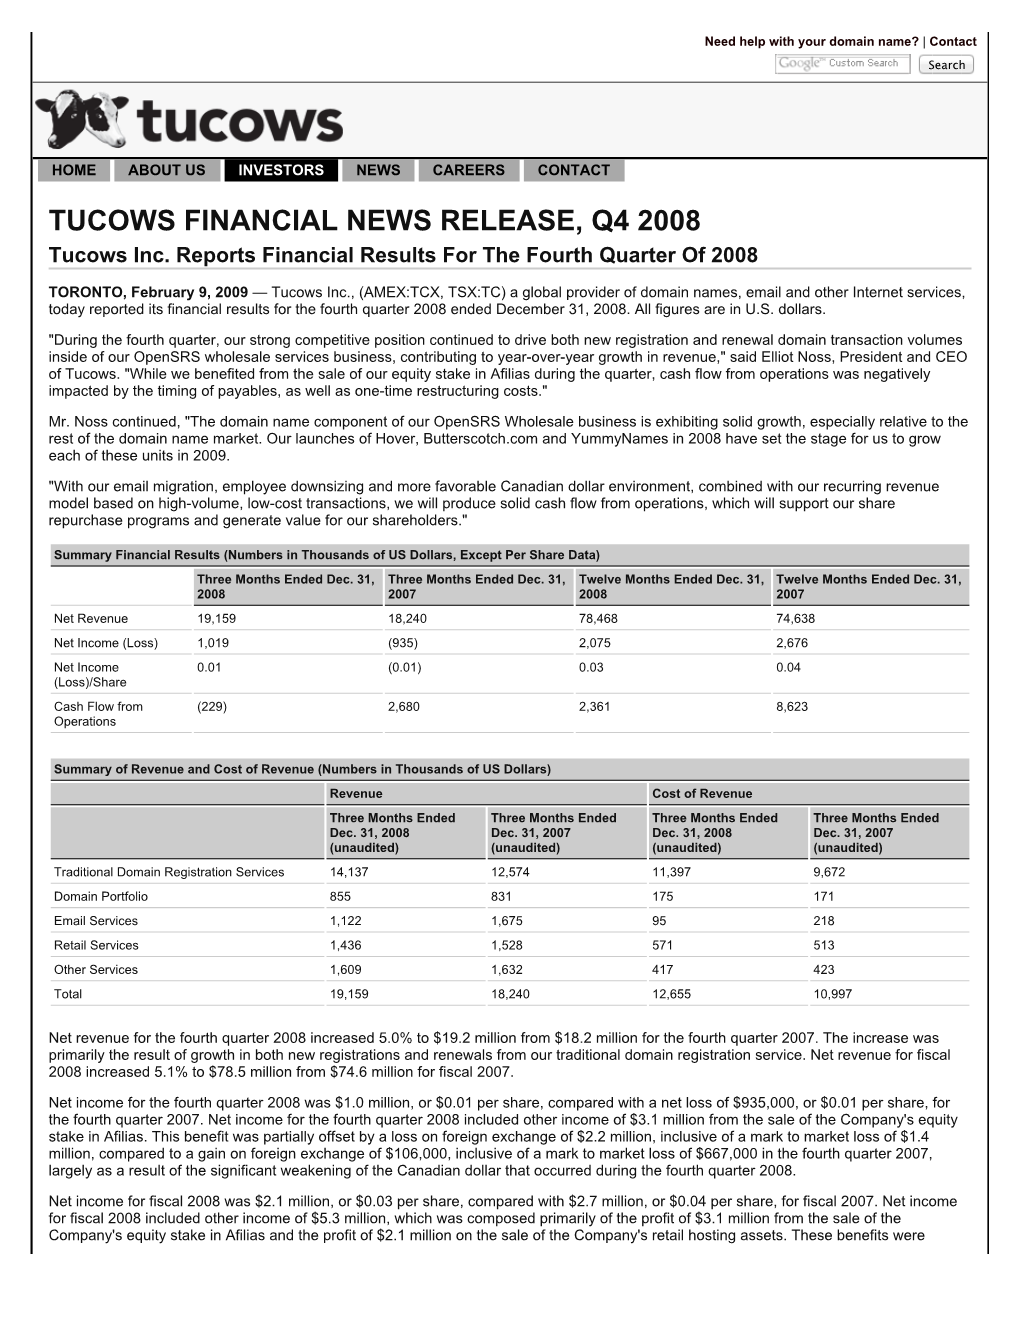 Tucows Inc. » Investors » Quarterly Financials » Q4 2008